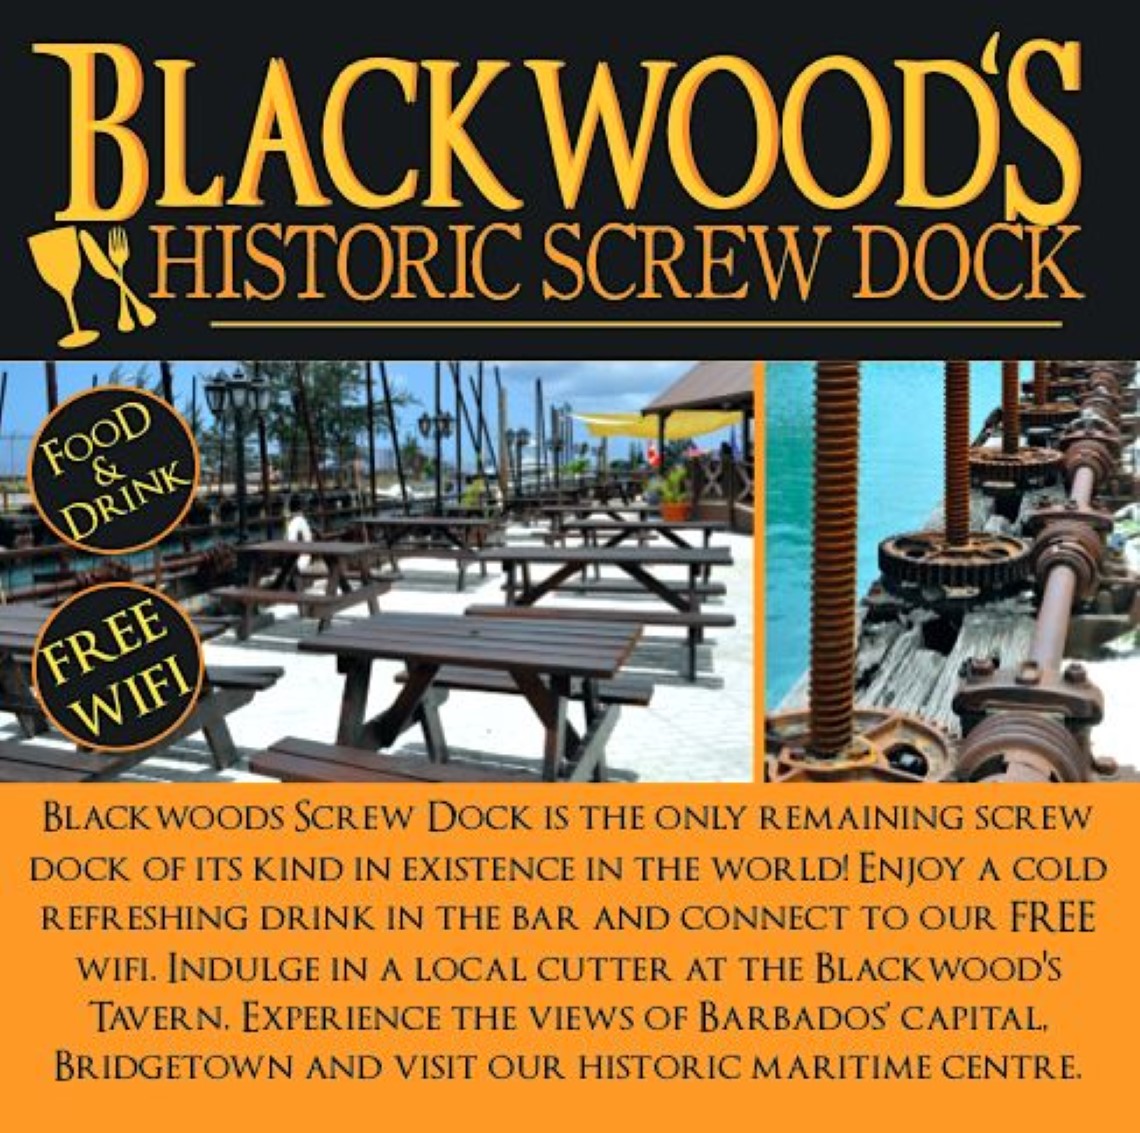 Blackwoods Screw Dock